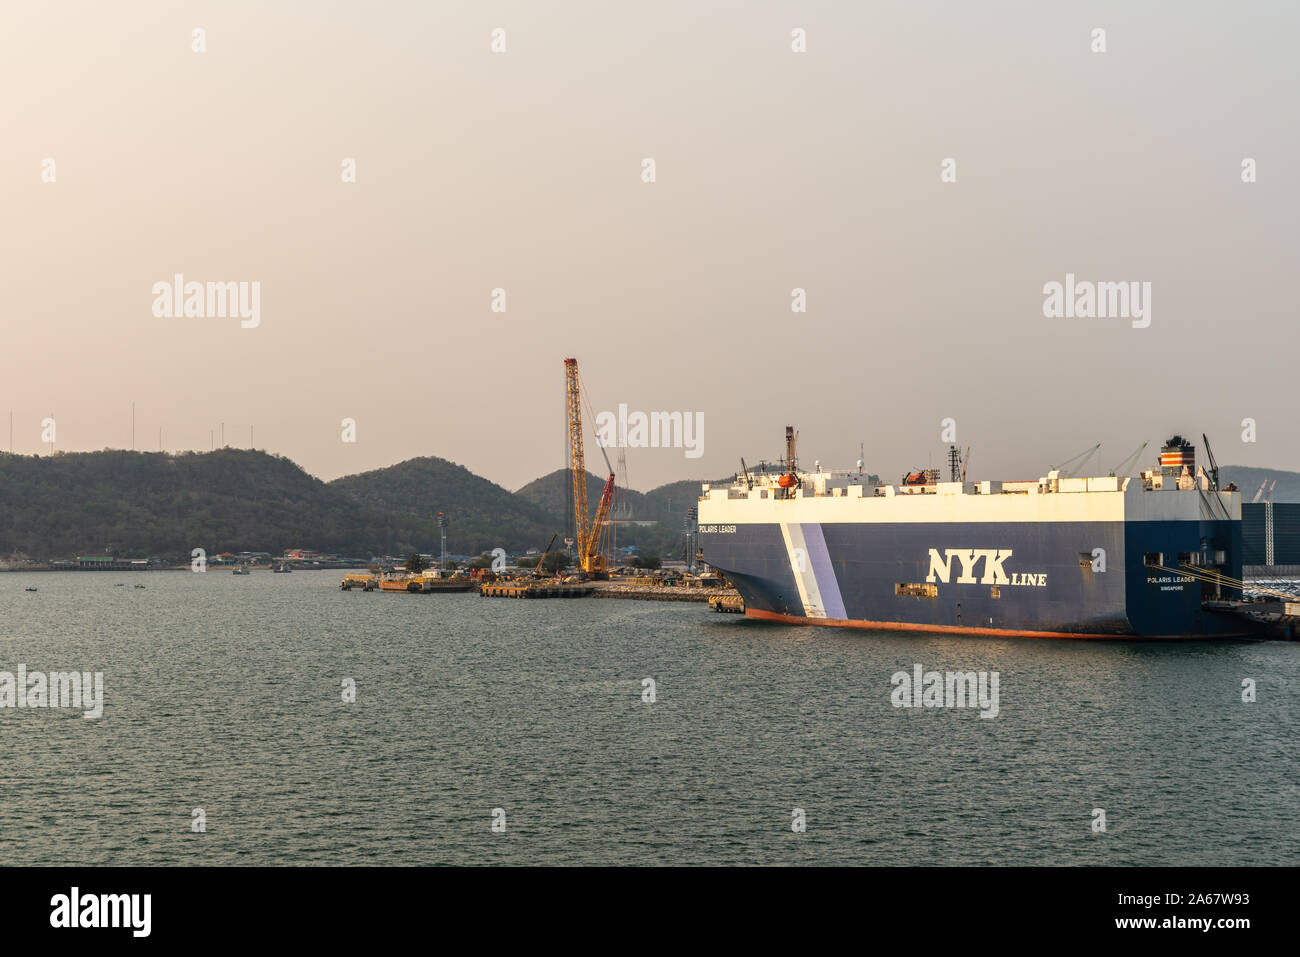 Port de Laem Chabang, Thaïlande - Mars 17, 2019 : Grand bleu-blanc NYKline, chef opérateur de véhicule Polaris, signalé à Singapour, amarré sous la lumière bl Banque D'Images